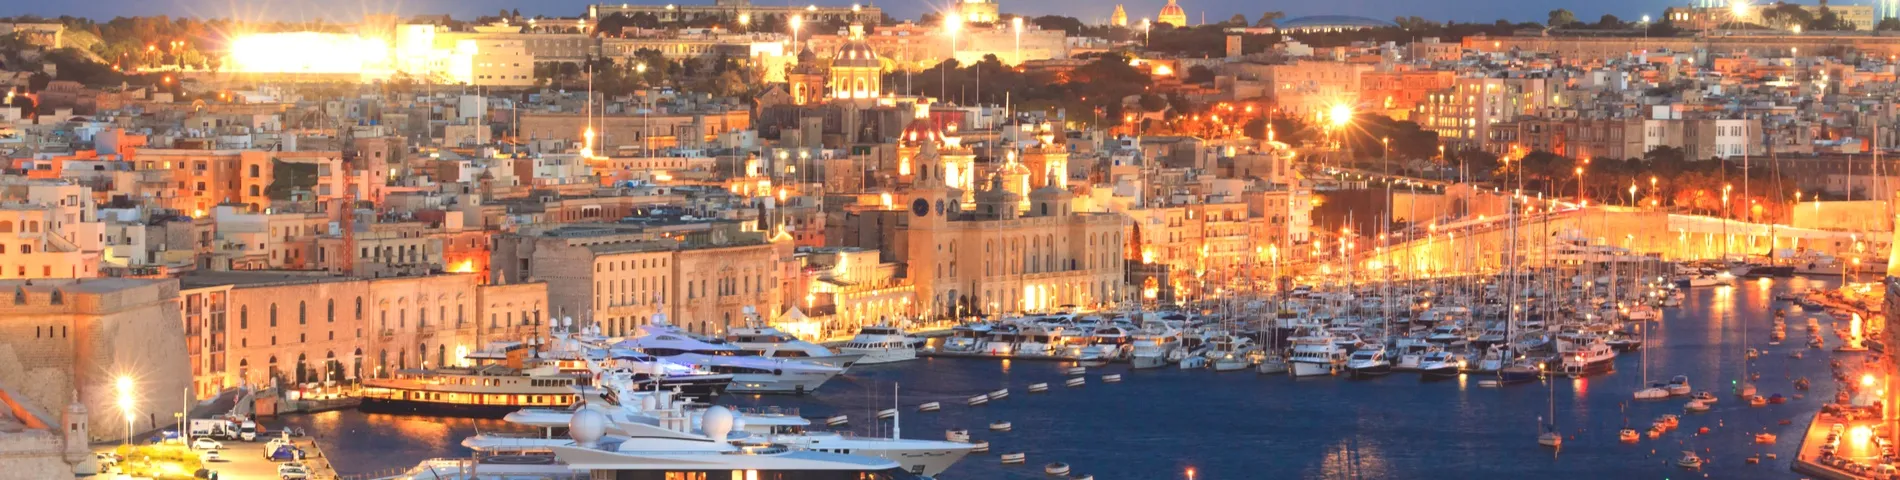 Valletta - General